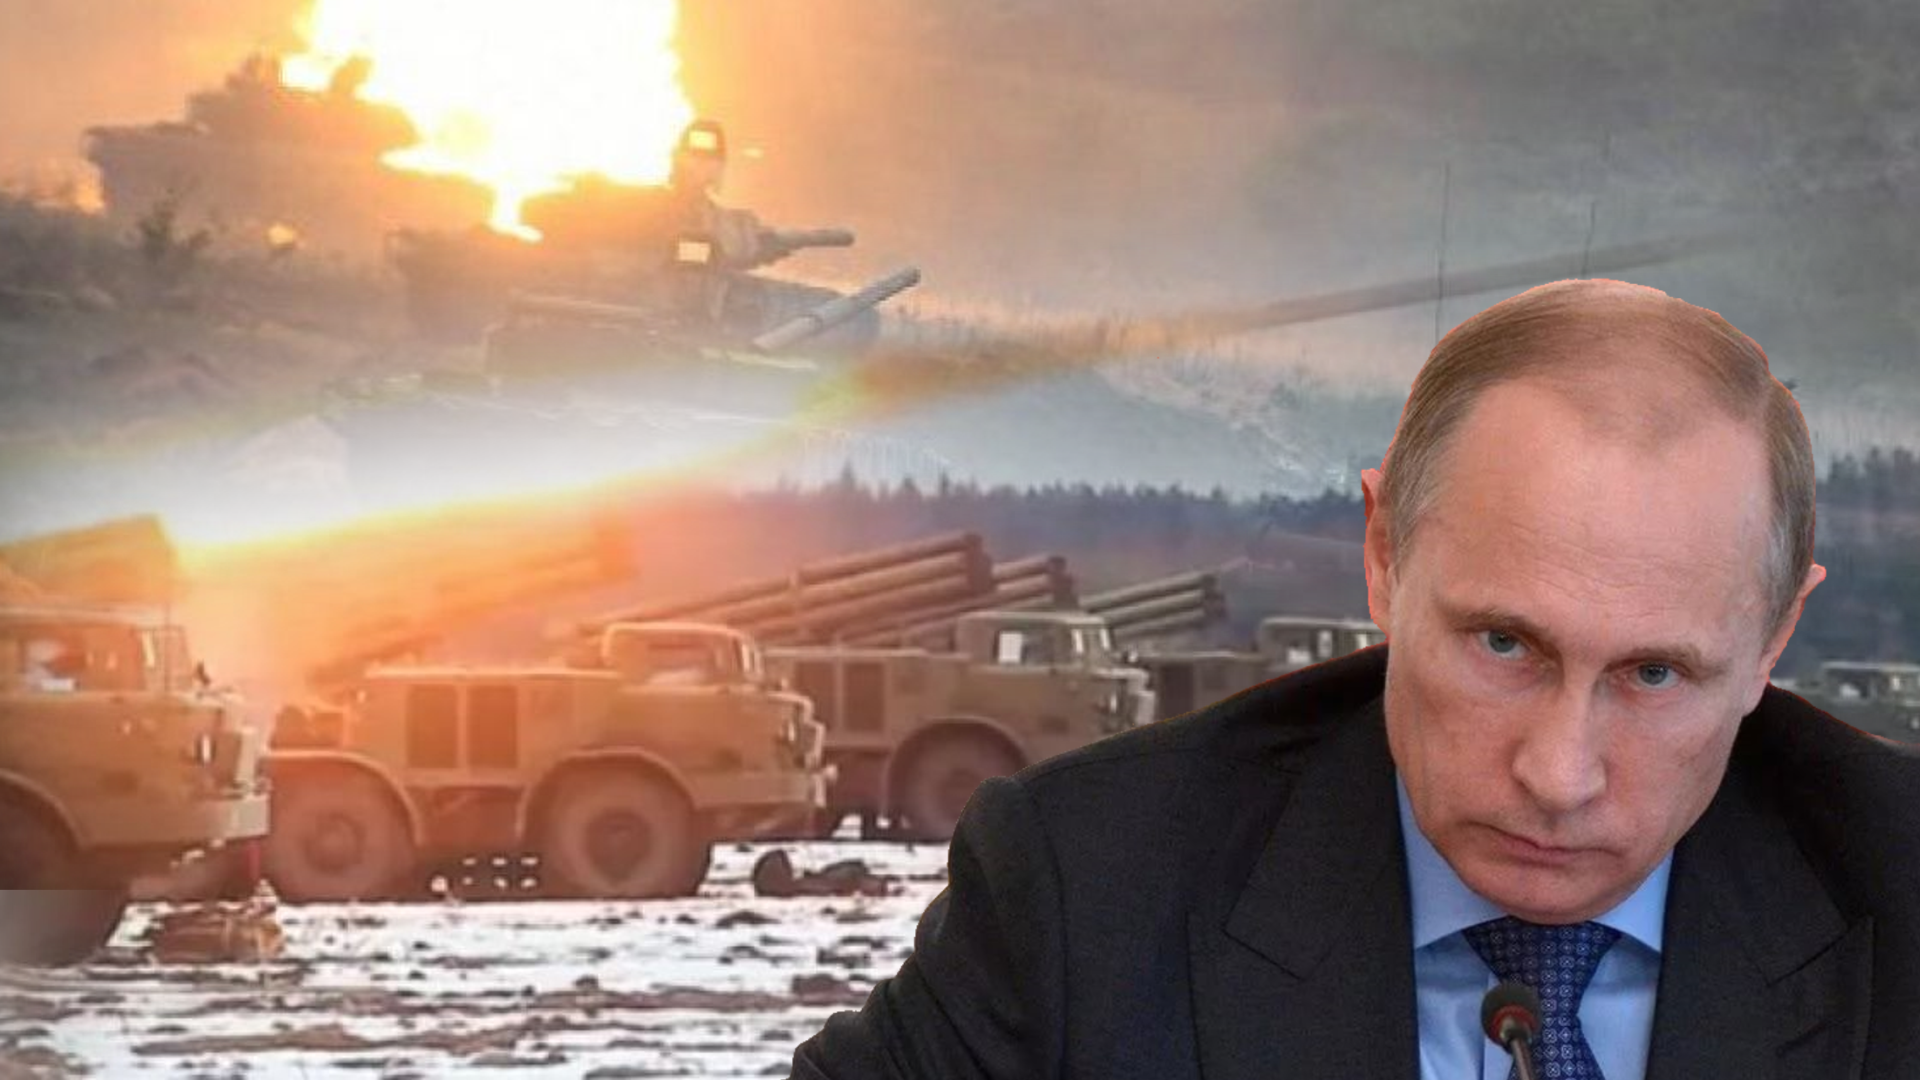 Рогондар ньюс последние новости. Путин проиграл войну. Путин проиграл войну с Украиной. Рогандар. Rogandar News.